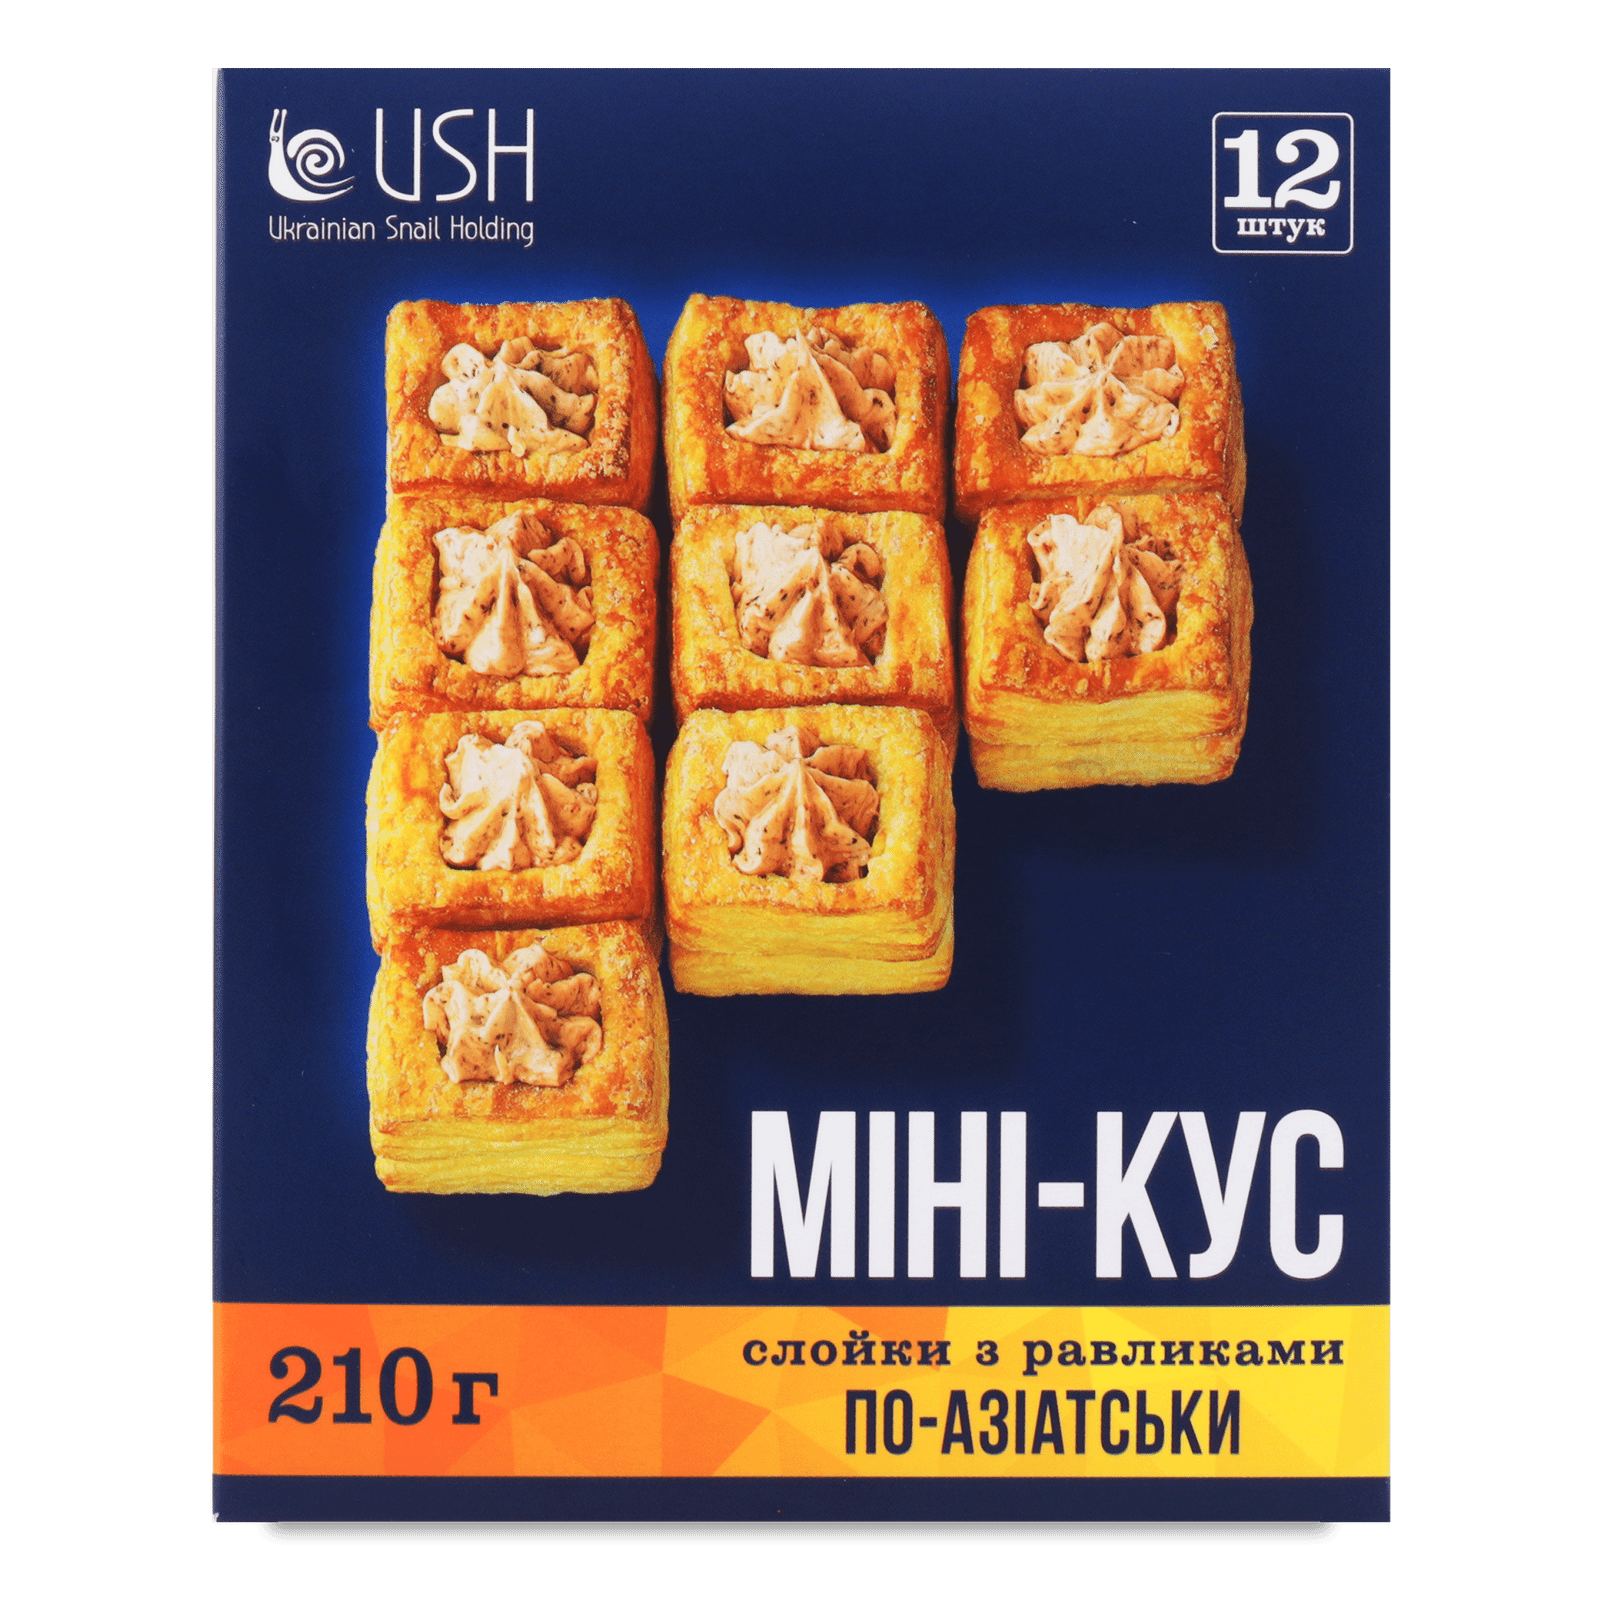 Слойки «Лавка Традицій» USH з равликами по-азіатськи мінікус заморожені - 1